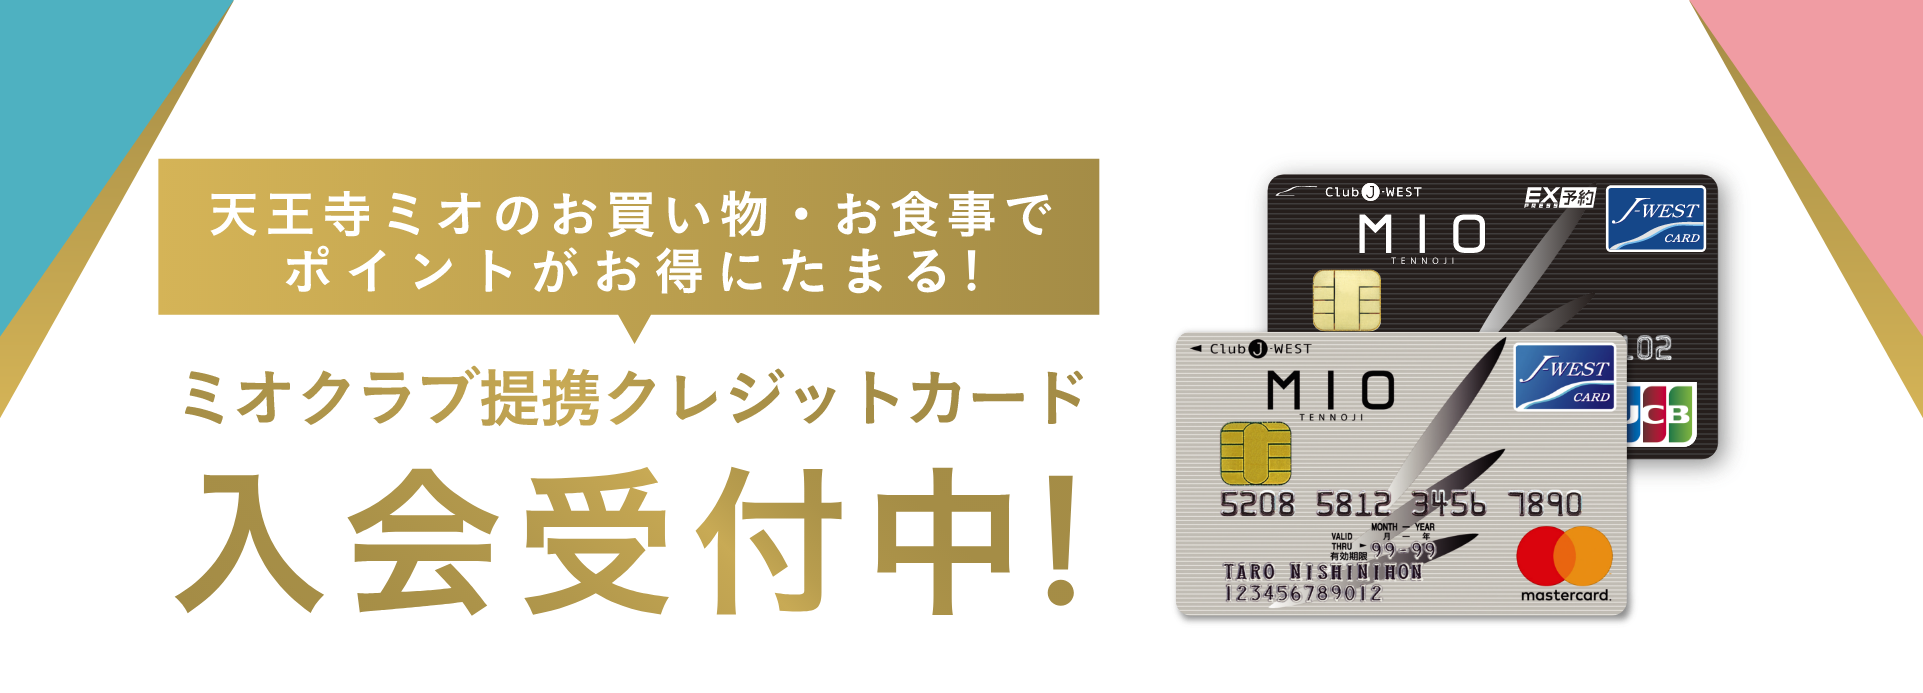 ミオクラブ提携クレジットカード入会受付中！